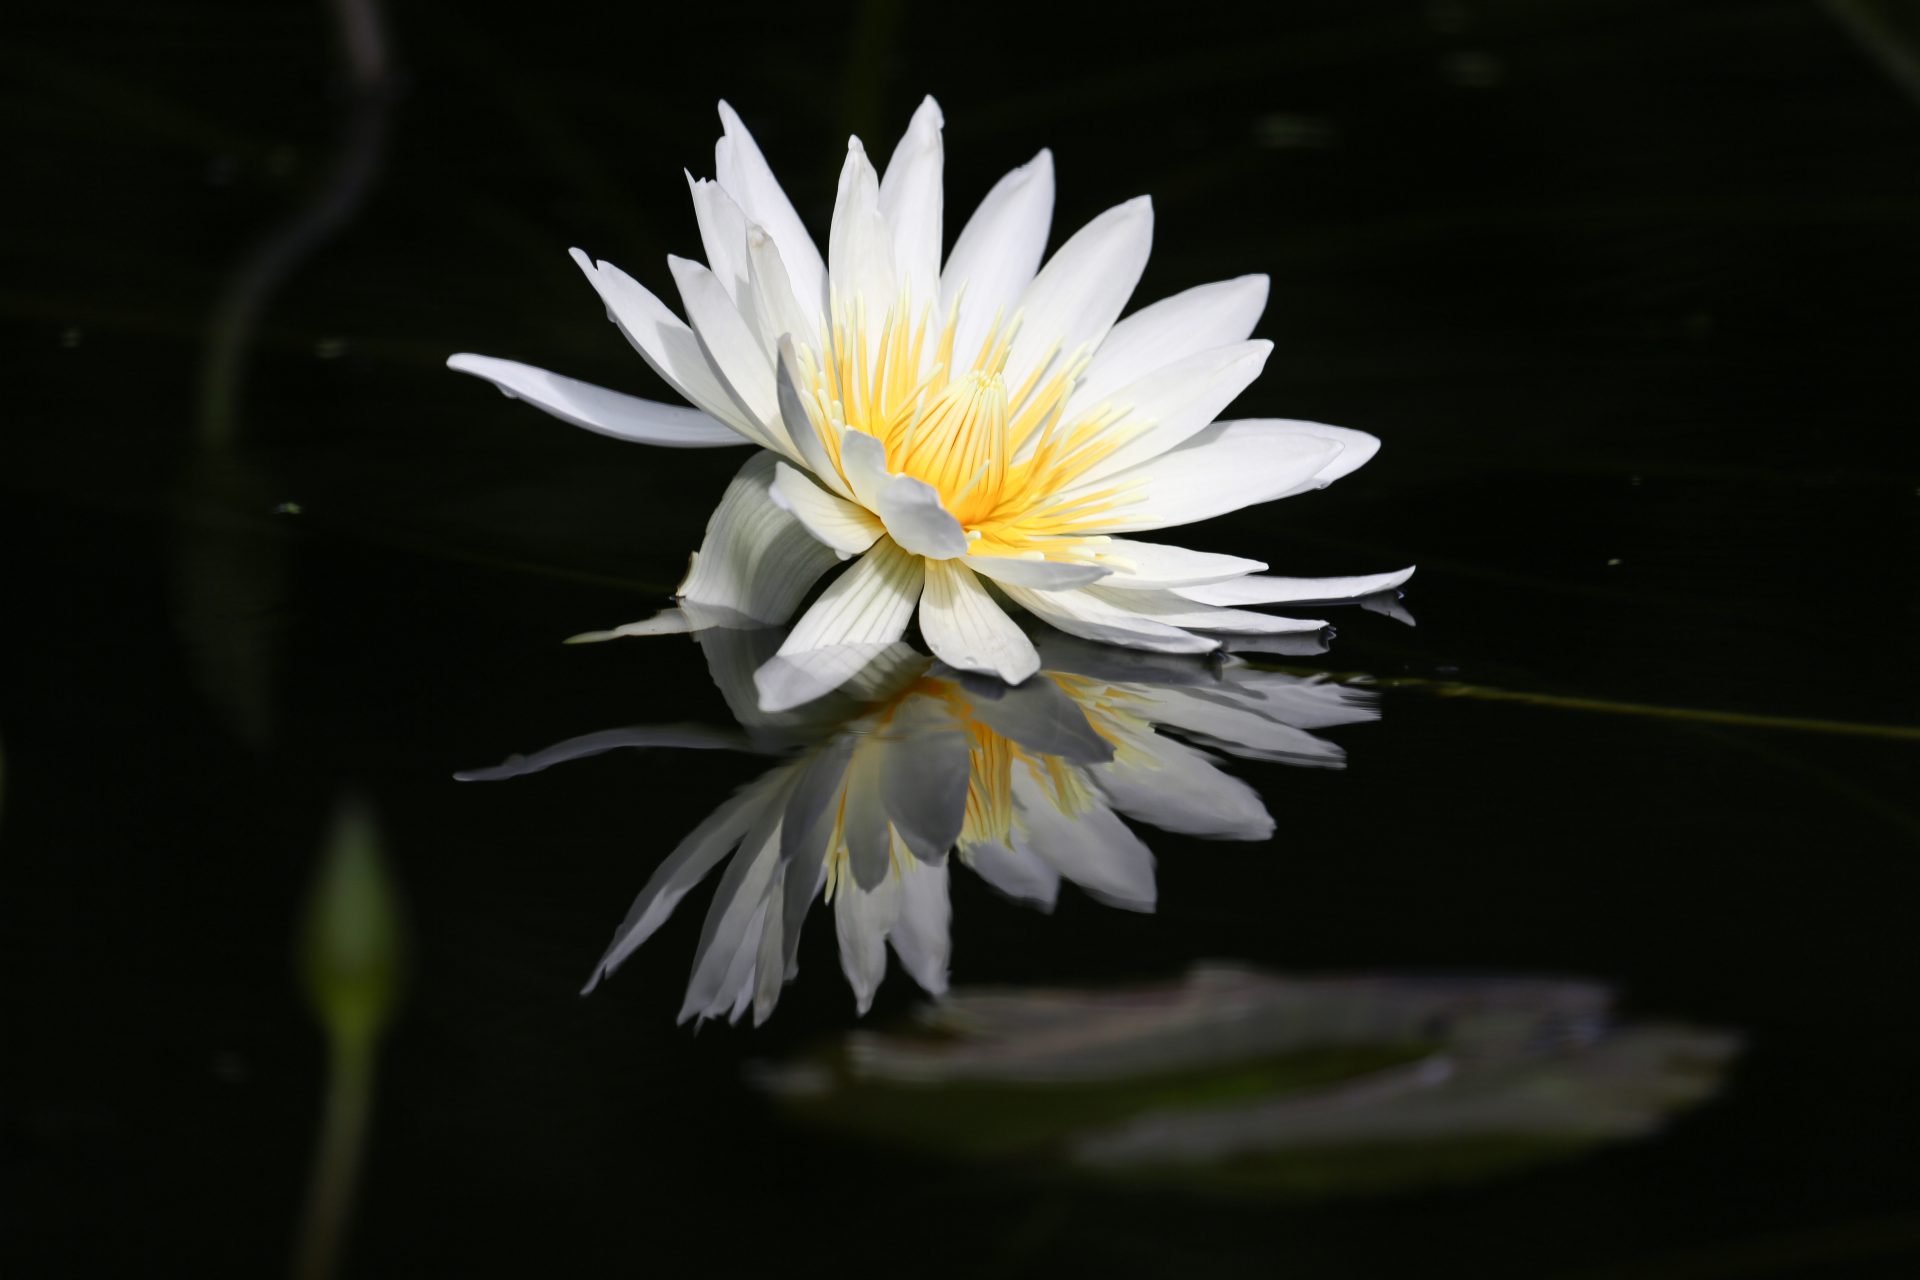 水面に咲く睡蓮（暗闇の中水面に睡蓮が一輪浮かぶ。白い花弁が水面に映る。水音が聞えそう）